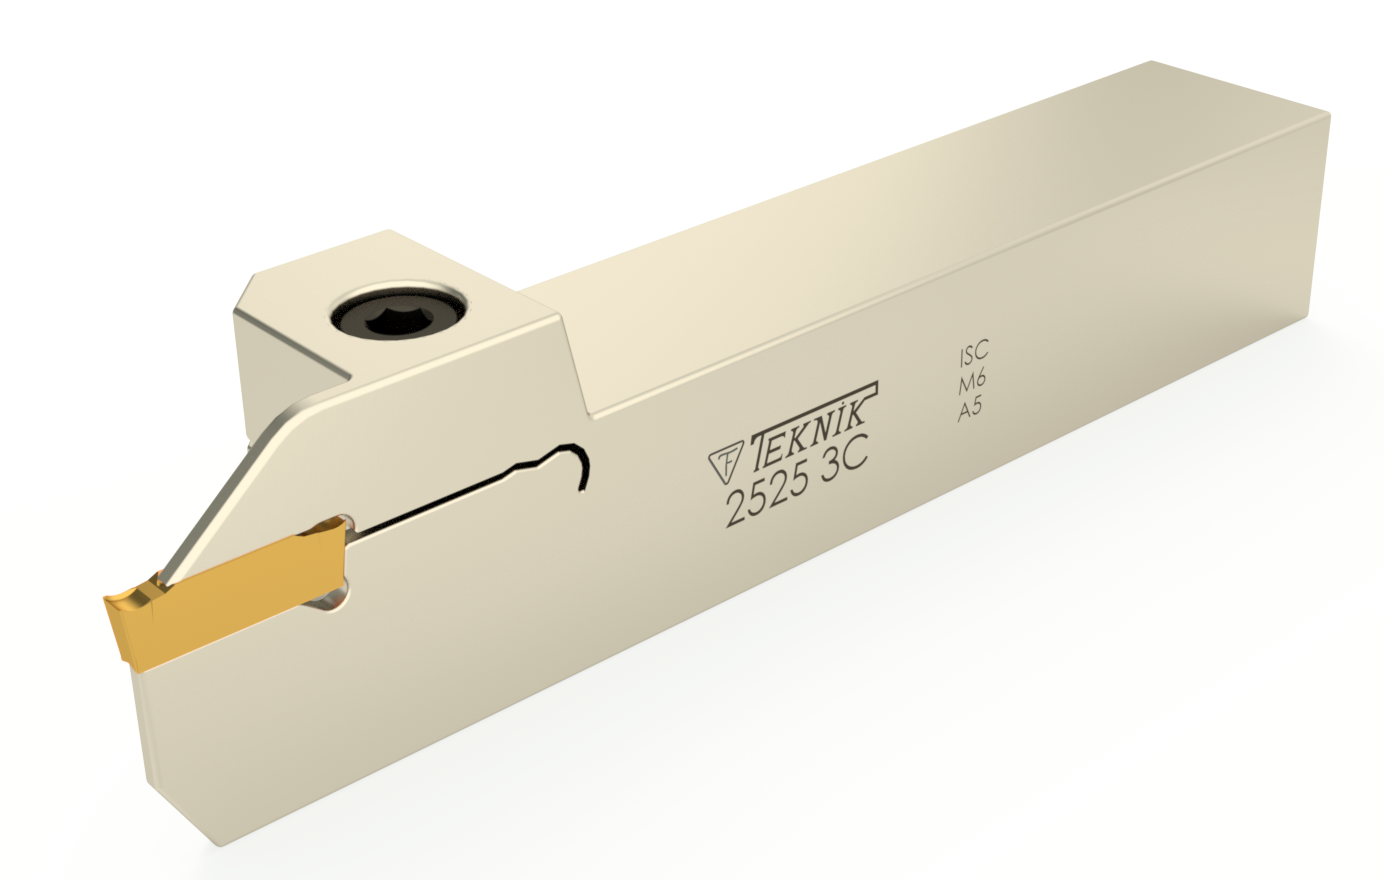 Stech-Klemmhalter auf durchsichtigem Hintergrund. Mit einer Wendeplatte des Typs DGN. Auf der Seite des Werkzeugs befinden sich das Logo des Herstellers und der Artikelcode.